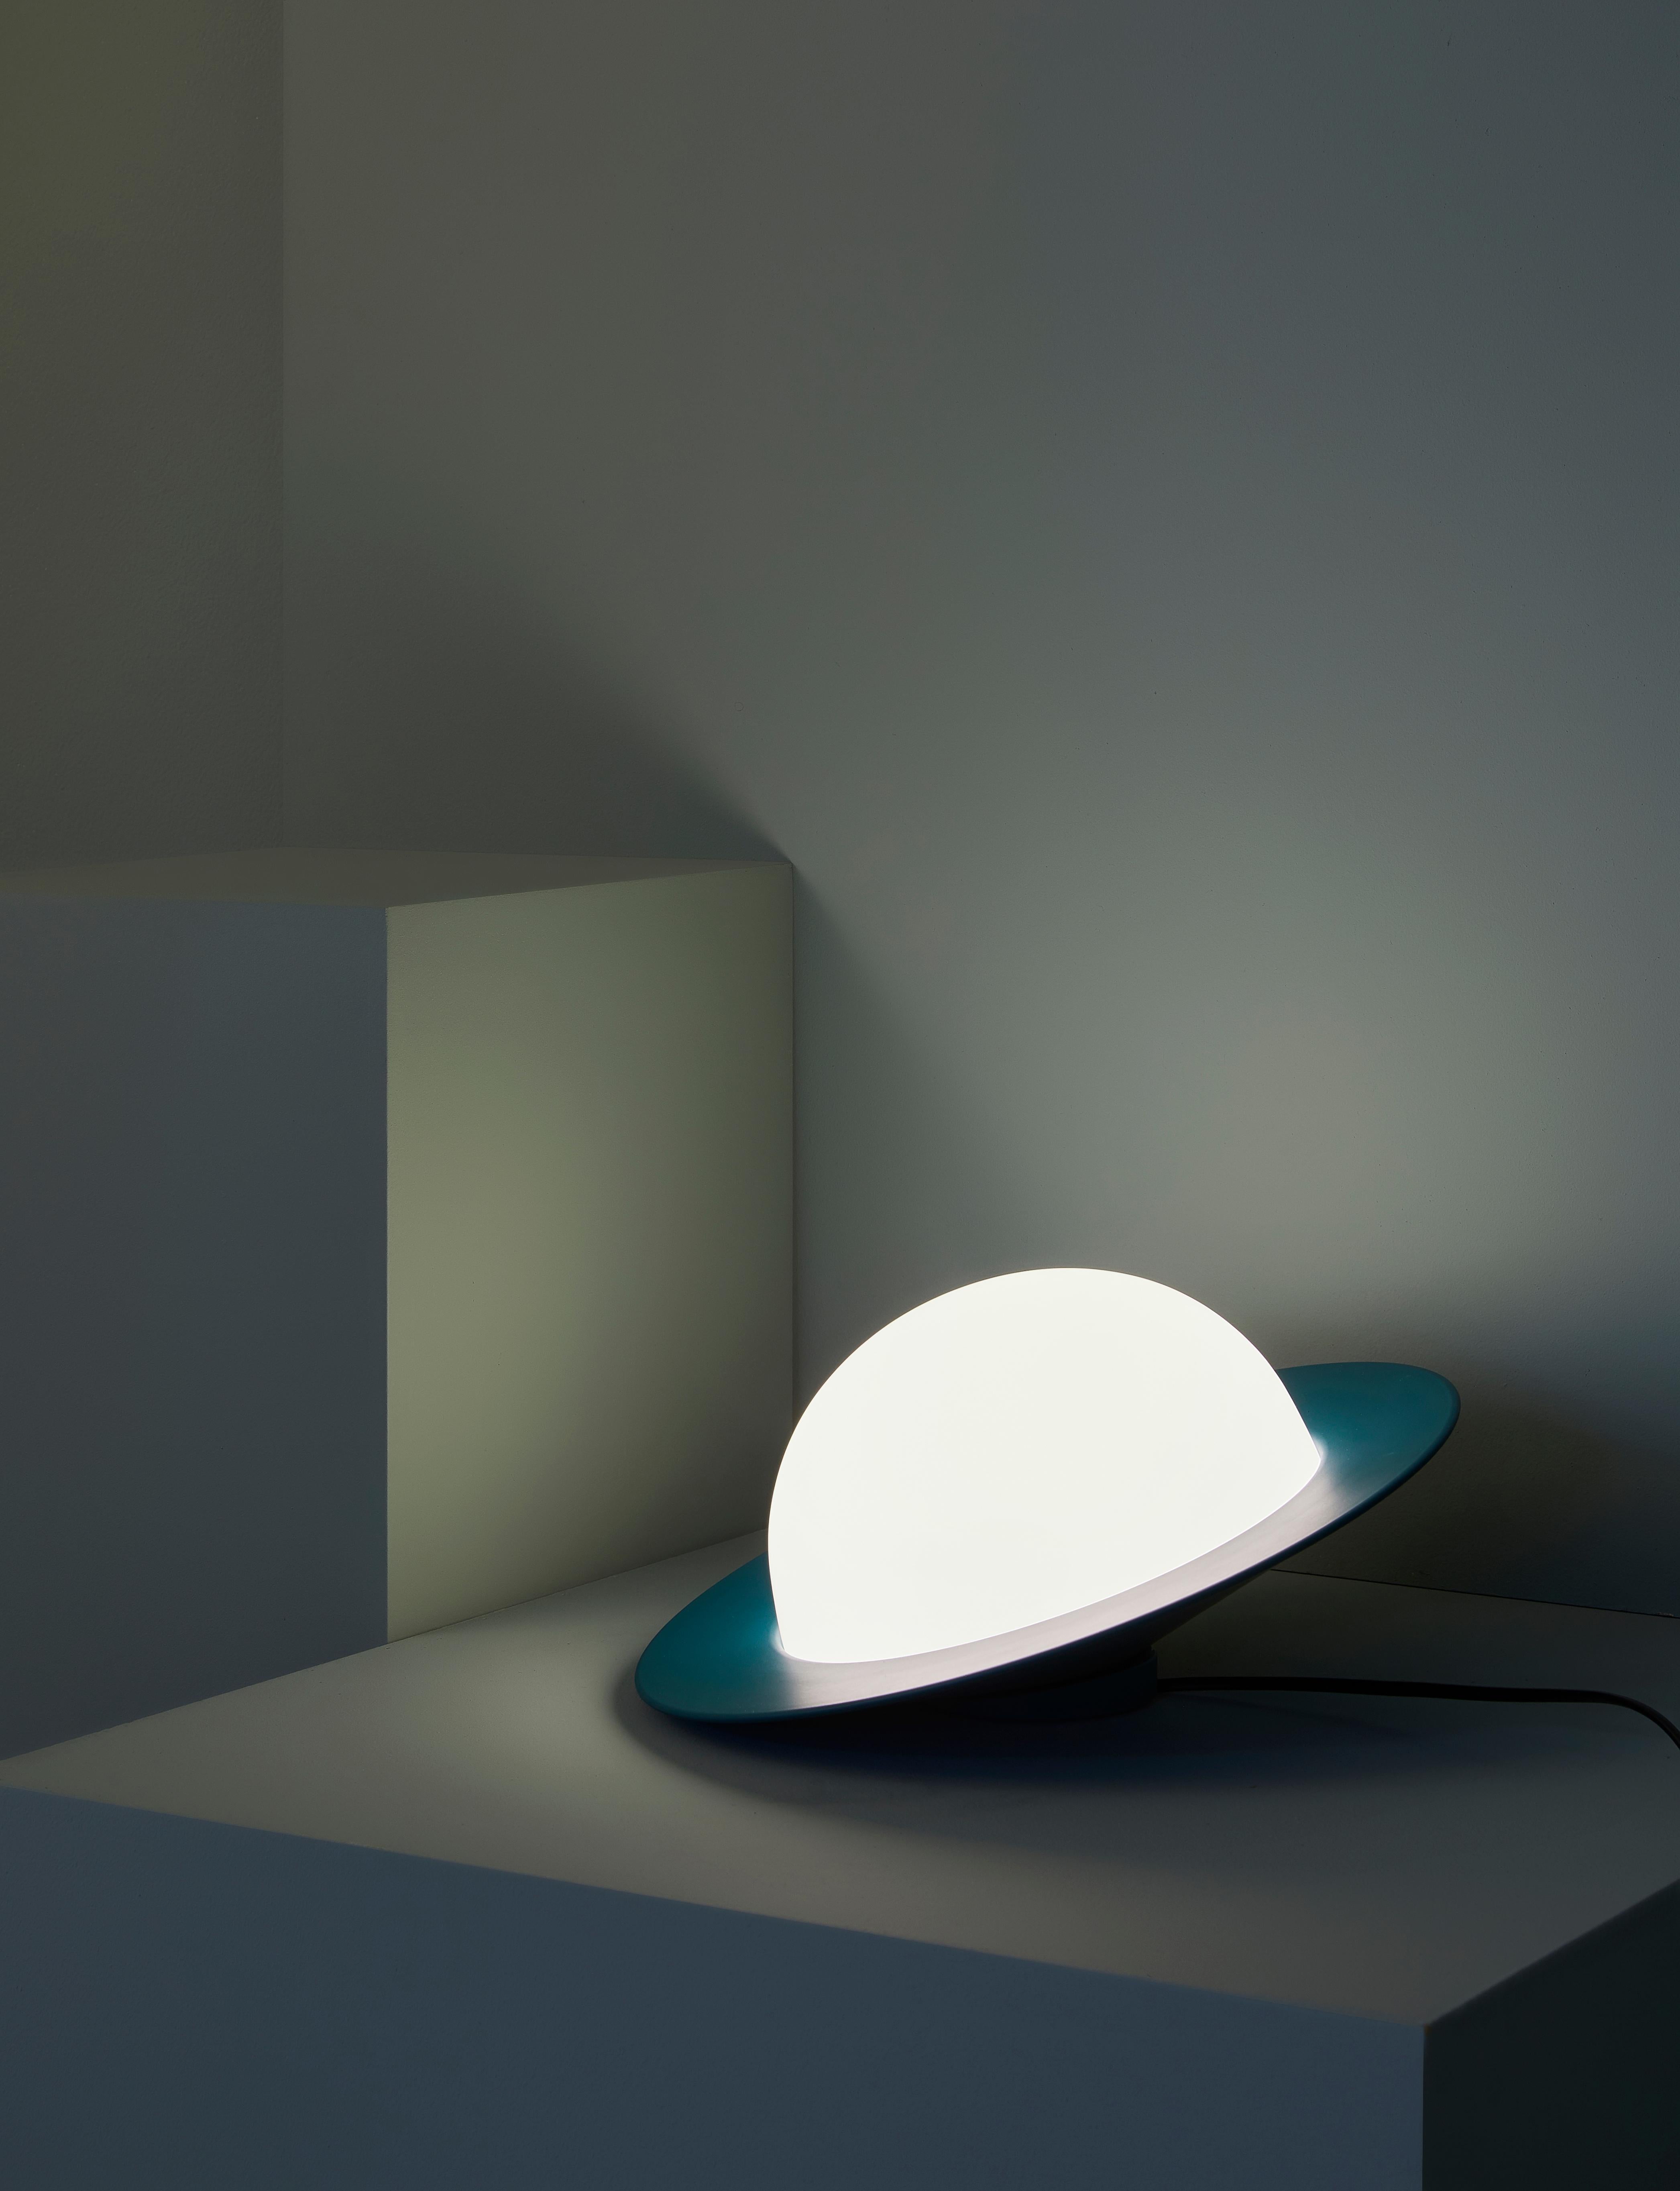 Lampe de table Alley par AGO Lighting
Répertorié UL

Aluminium peint, verre opale blanc
LED G9 110-240V (non incluse)

Couleurs disponibles :
Anthracite, blanc, gris, bordeaux et vert.

Mesures : Version inclinée
16,2 x 32,2 cm (grand format)
11,4 x